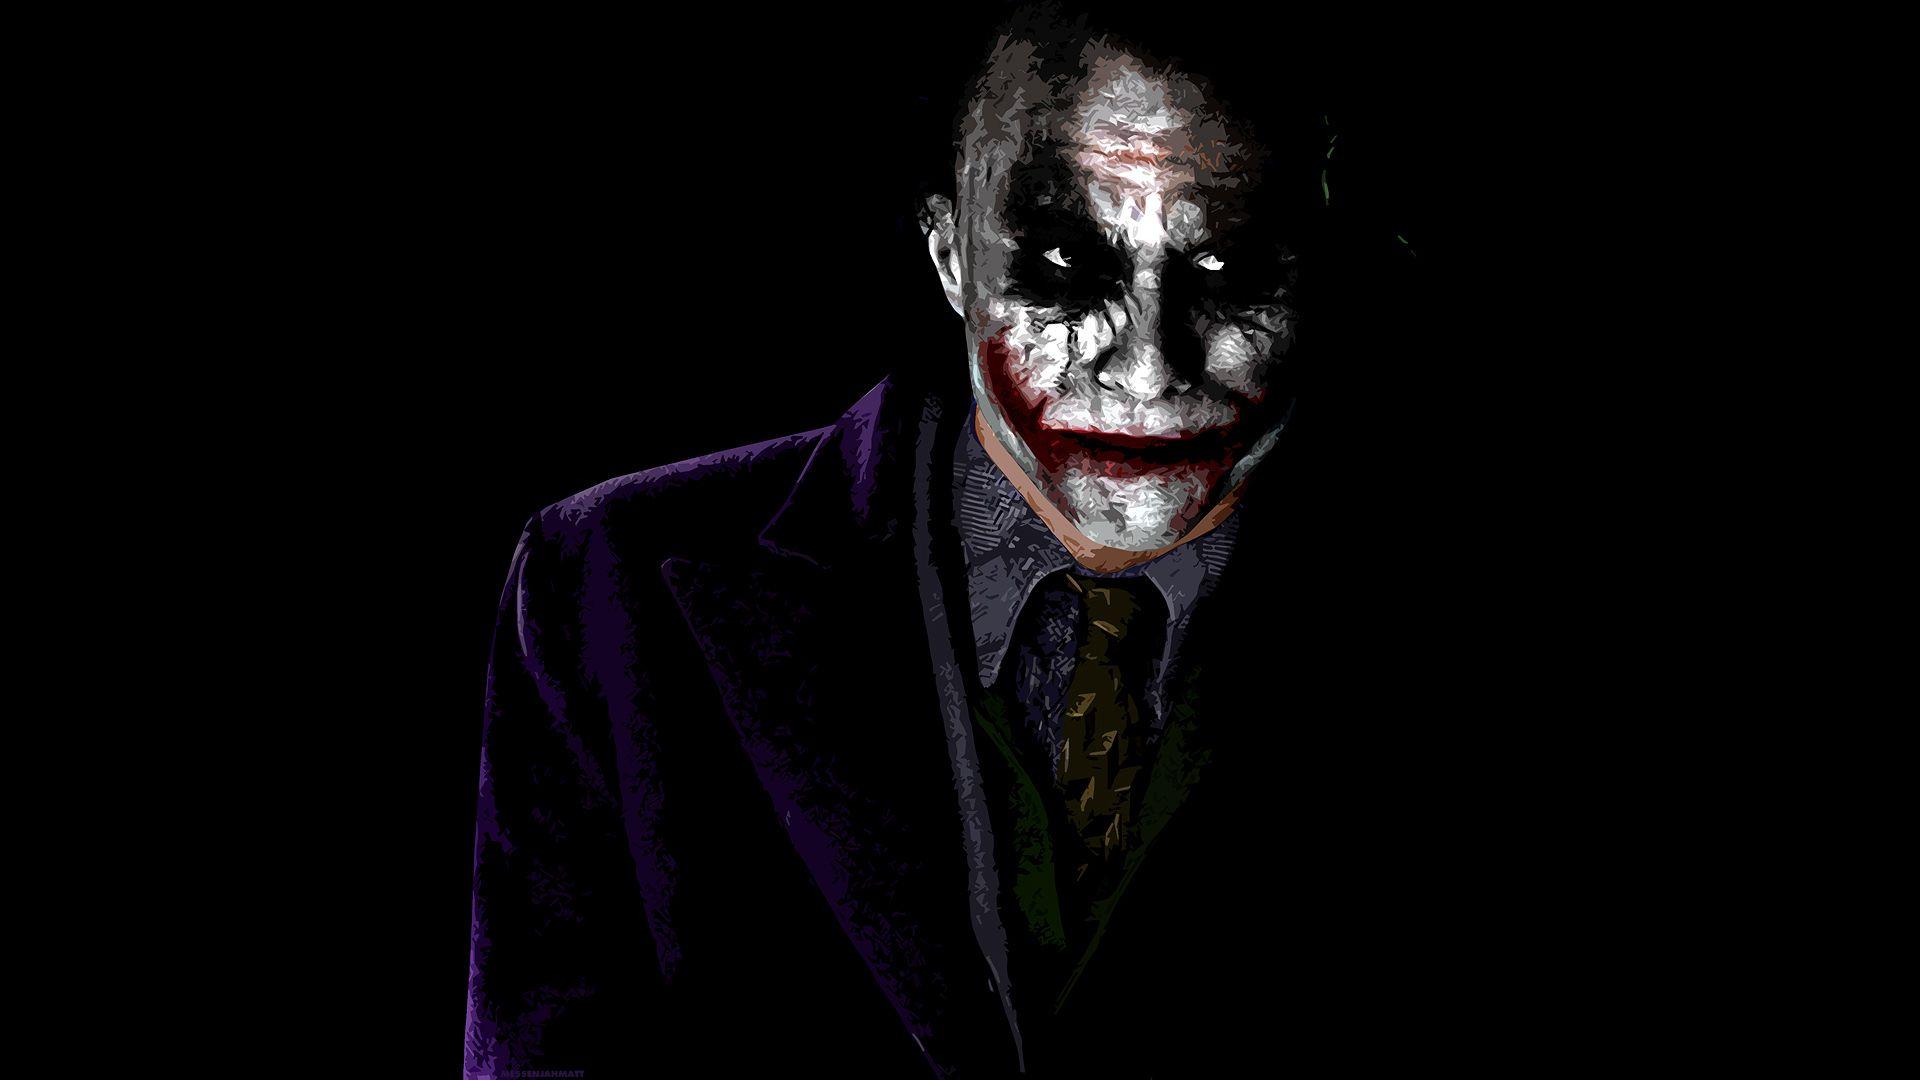 1920x1080 The Joker Wallpaper, Hình ảnh, Hình ảnh